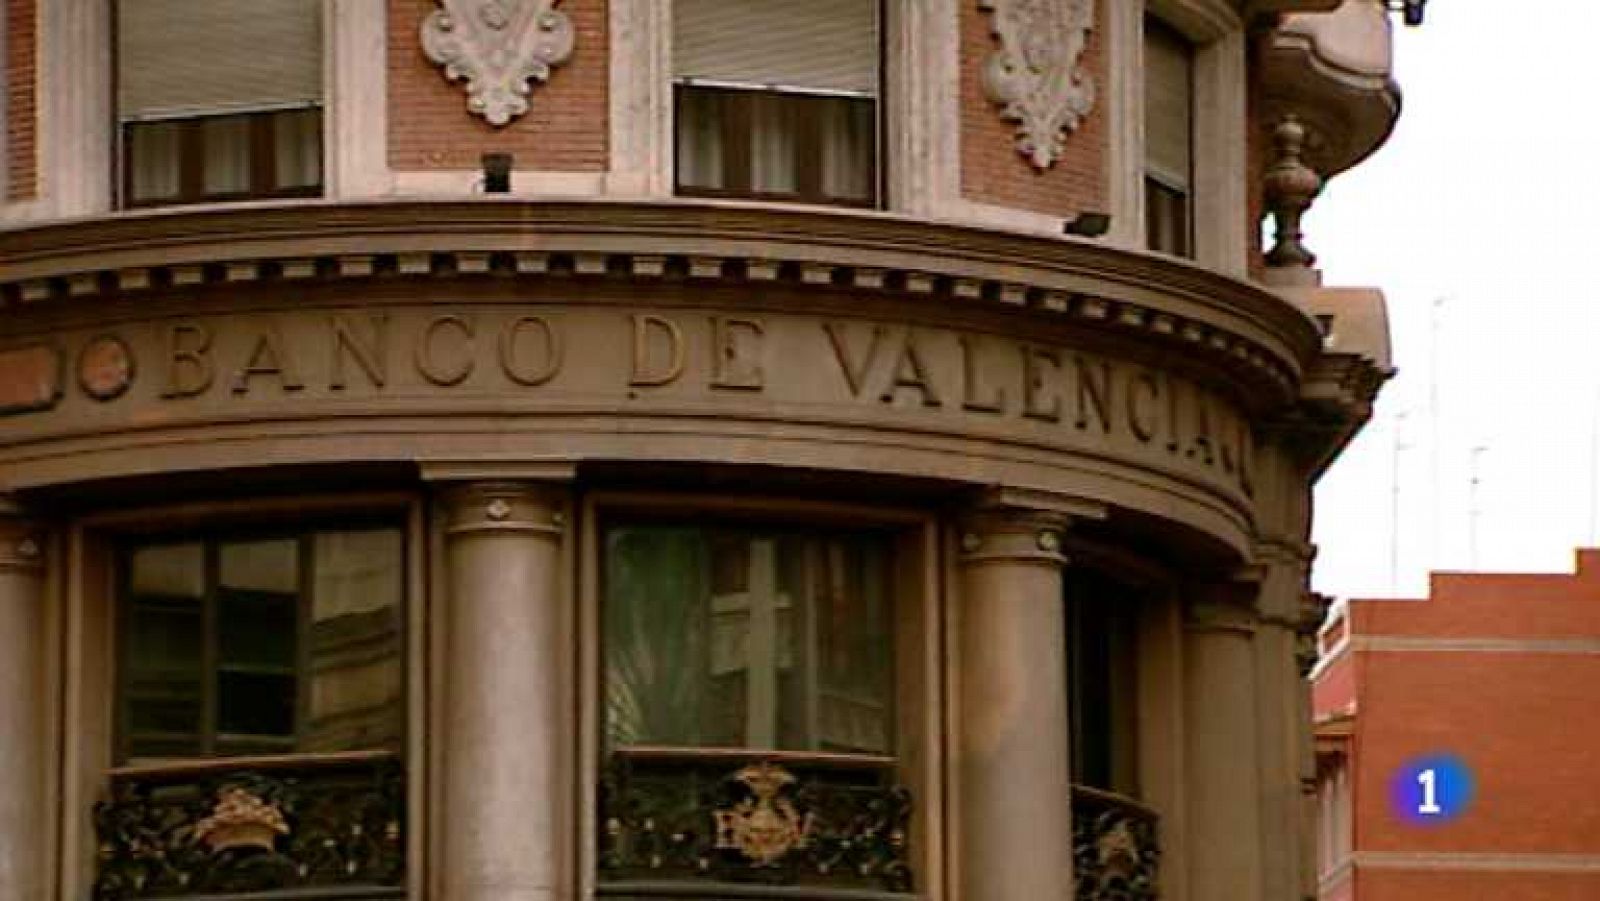 L'informatiu - Comunitat Valenciana: La Comunidad Valenciana en 2' - 28/11/12 | RTVE Play